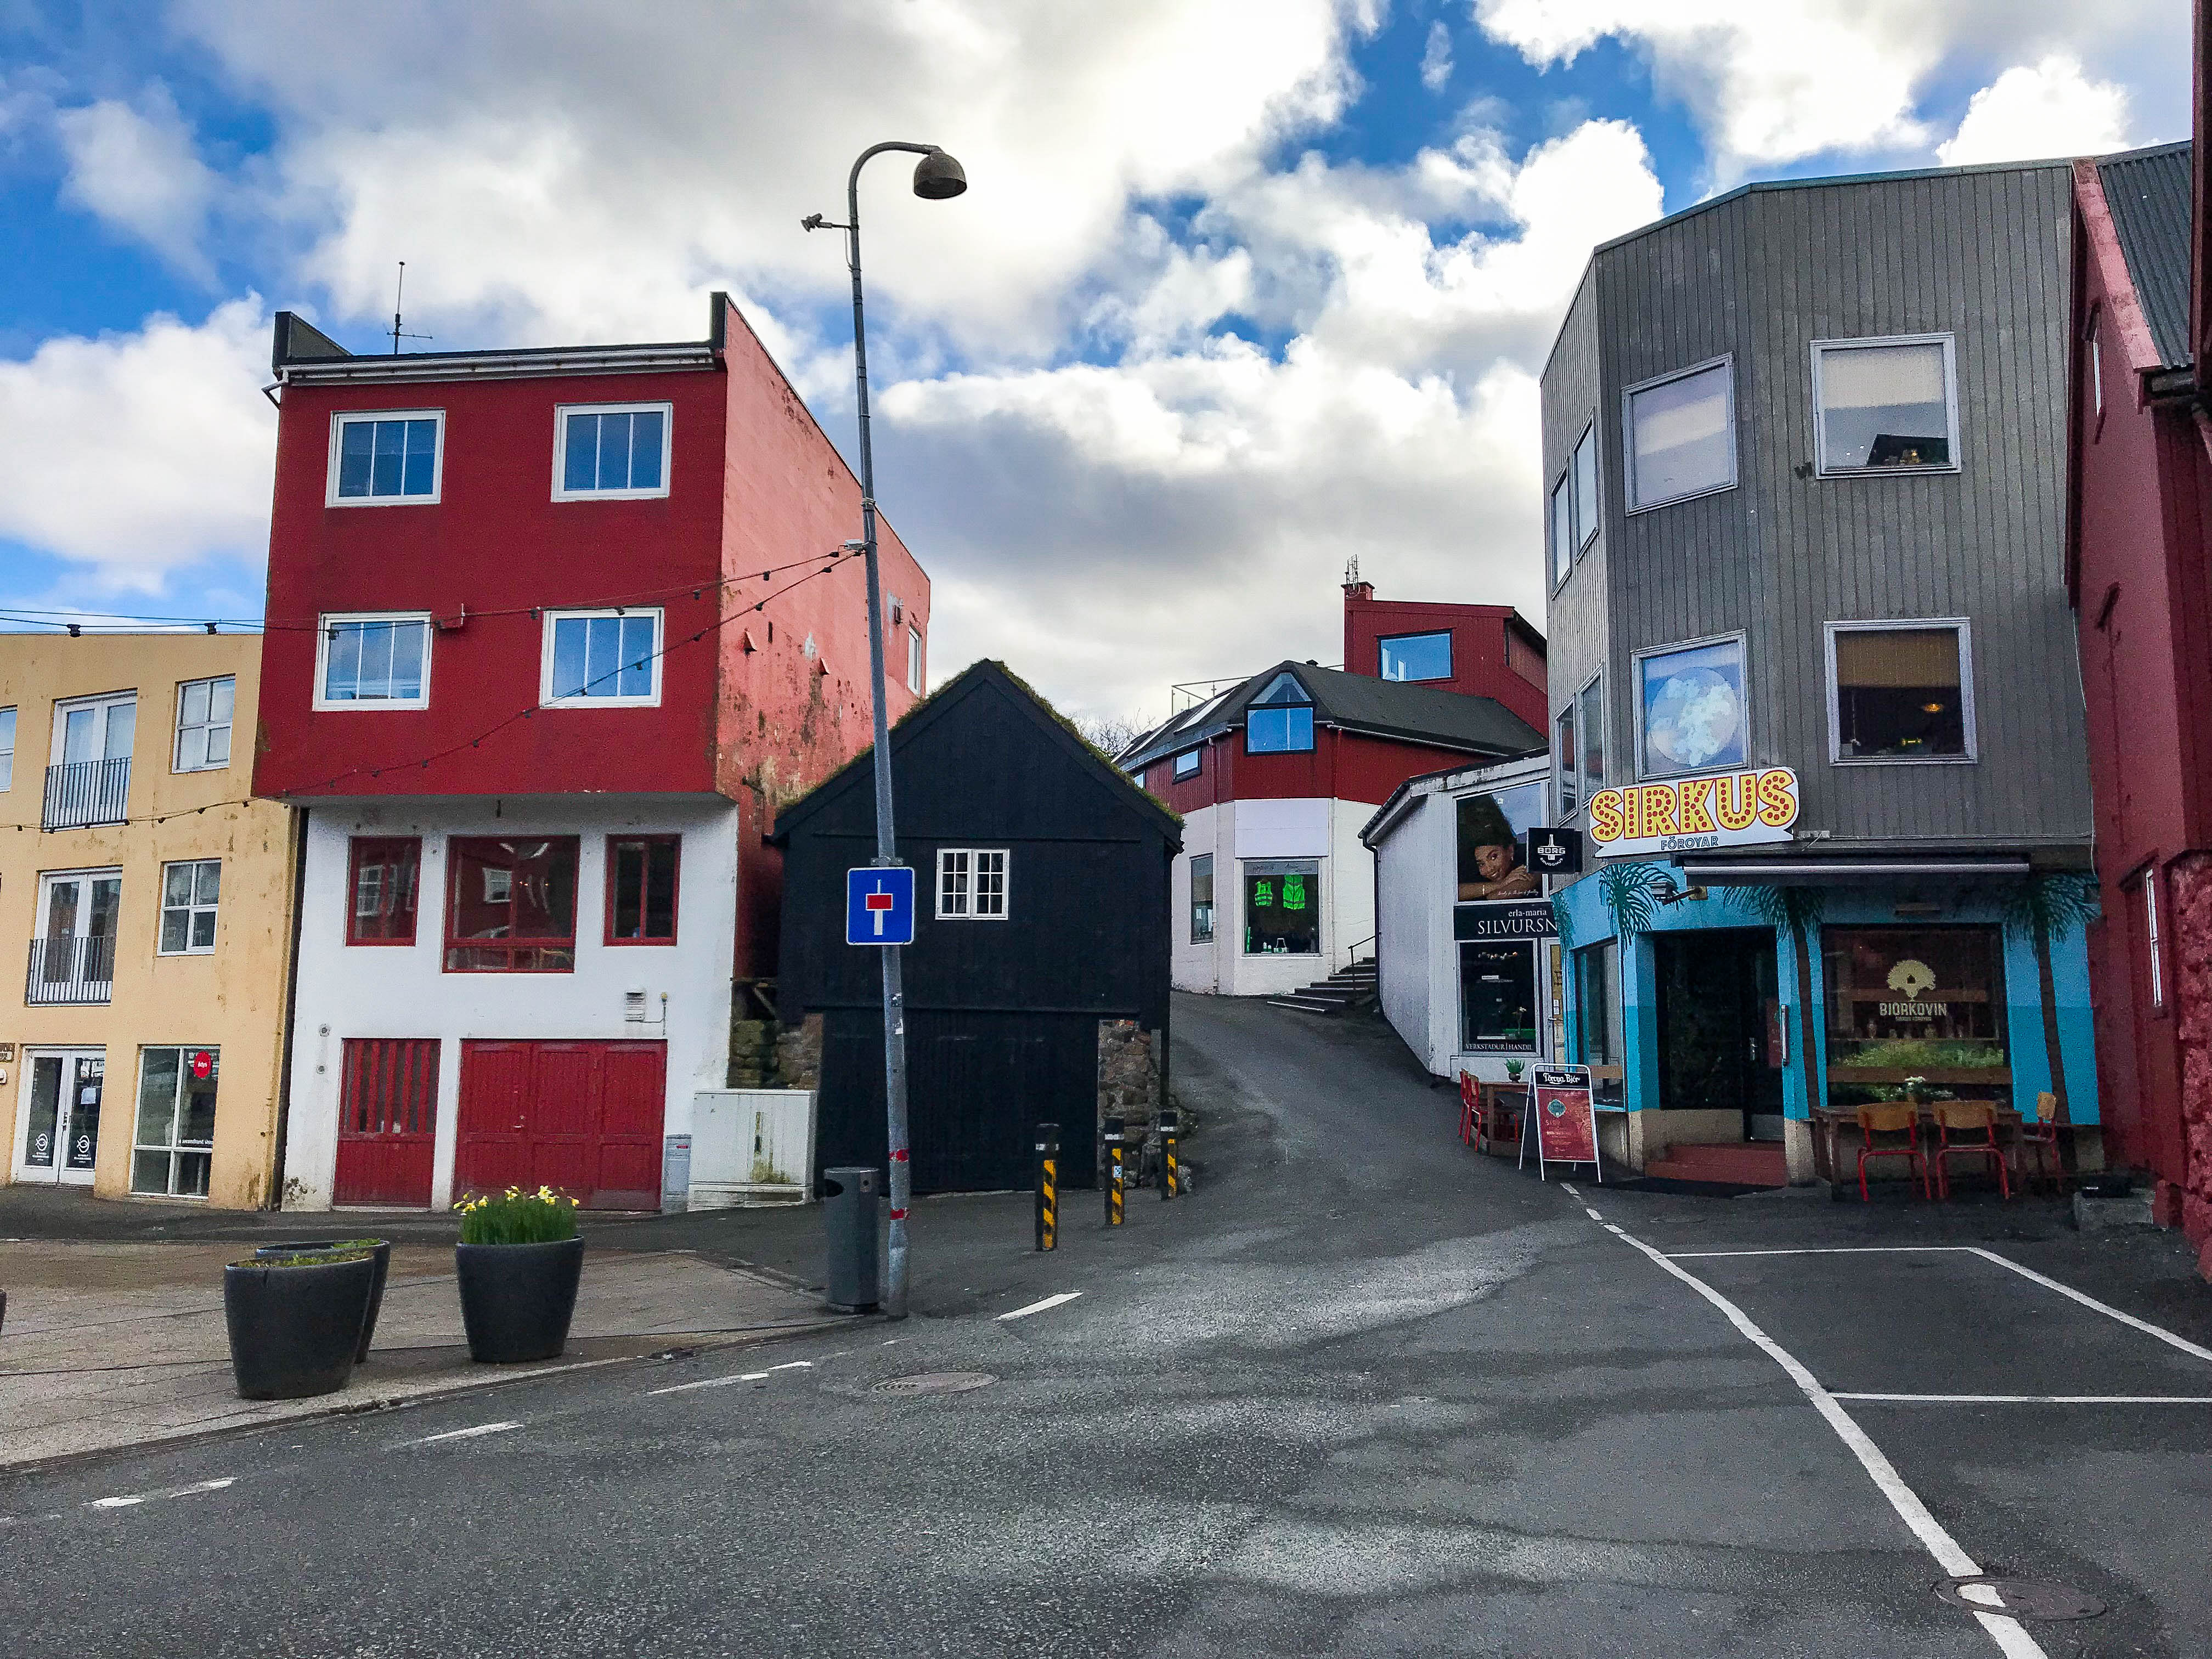 Streets of Tórshavn and Sirkus Bar 